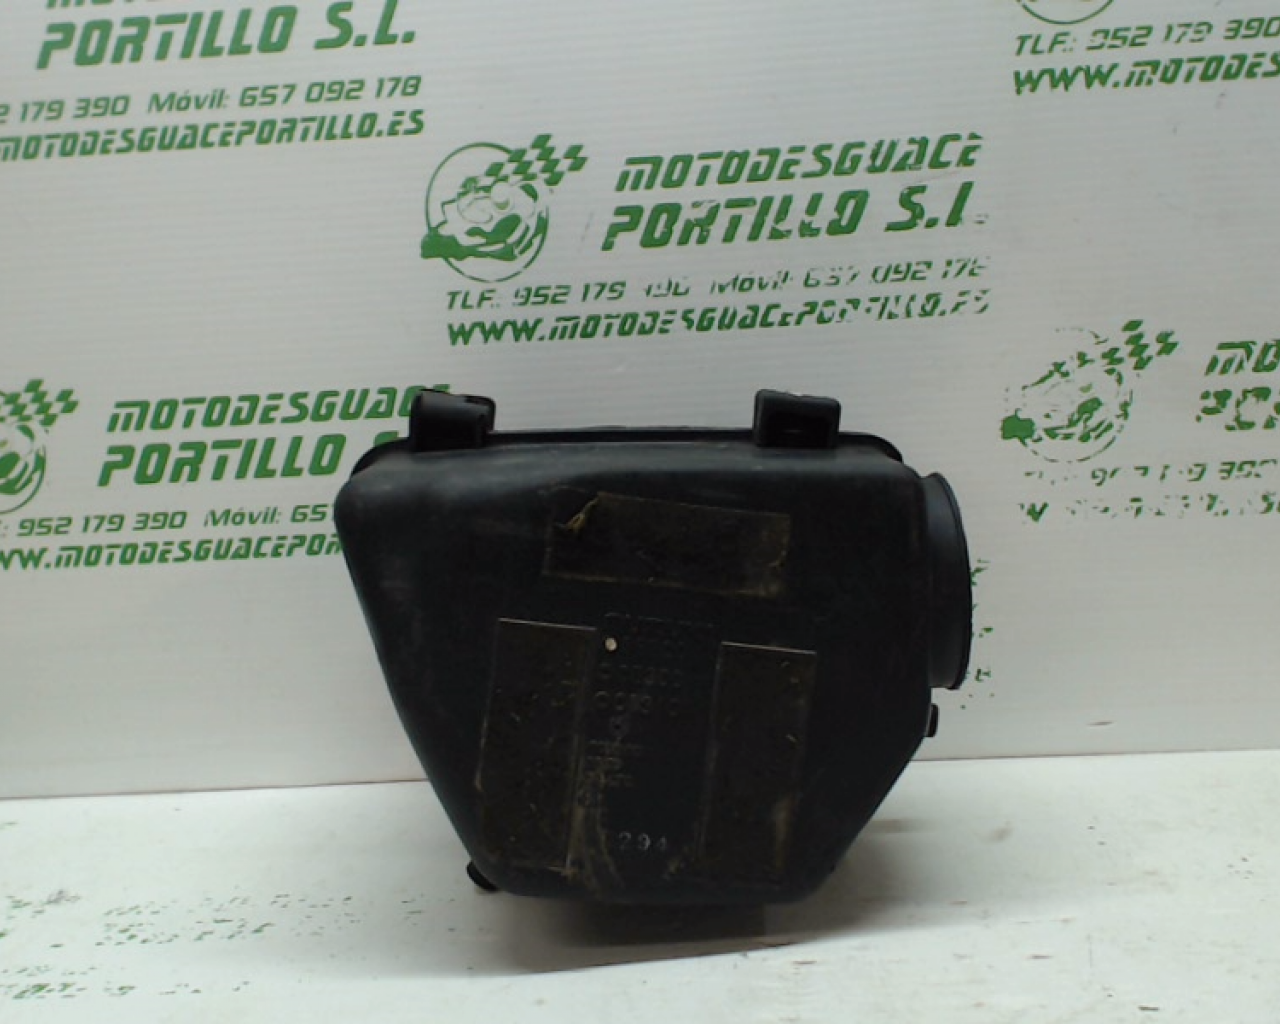 Caja filtro Suzuki GN 250 (1999-2000)